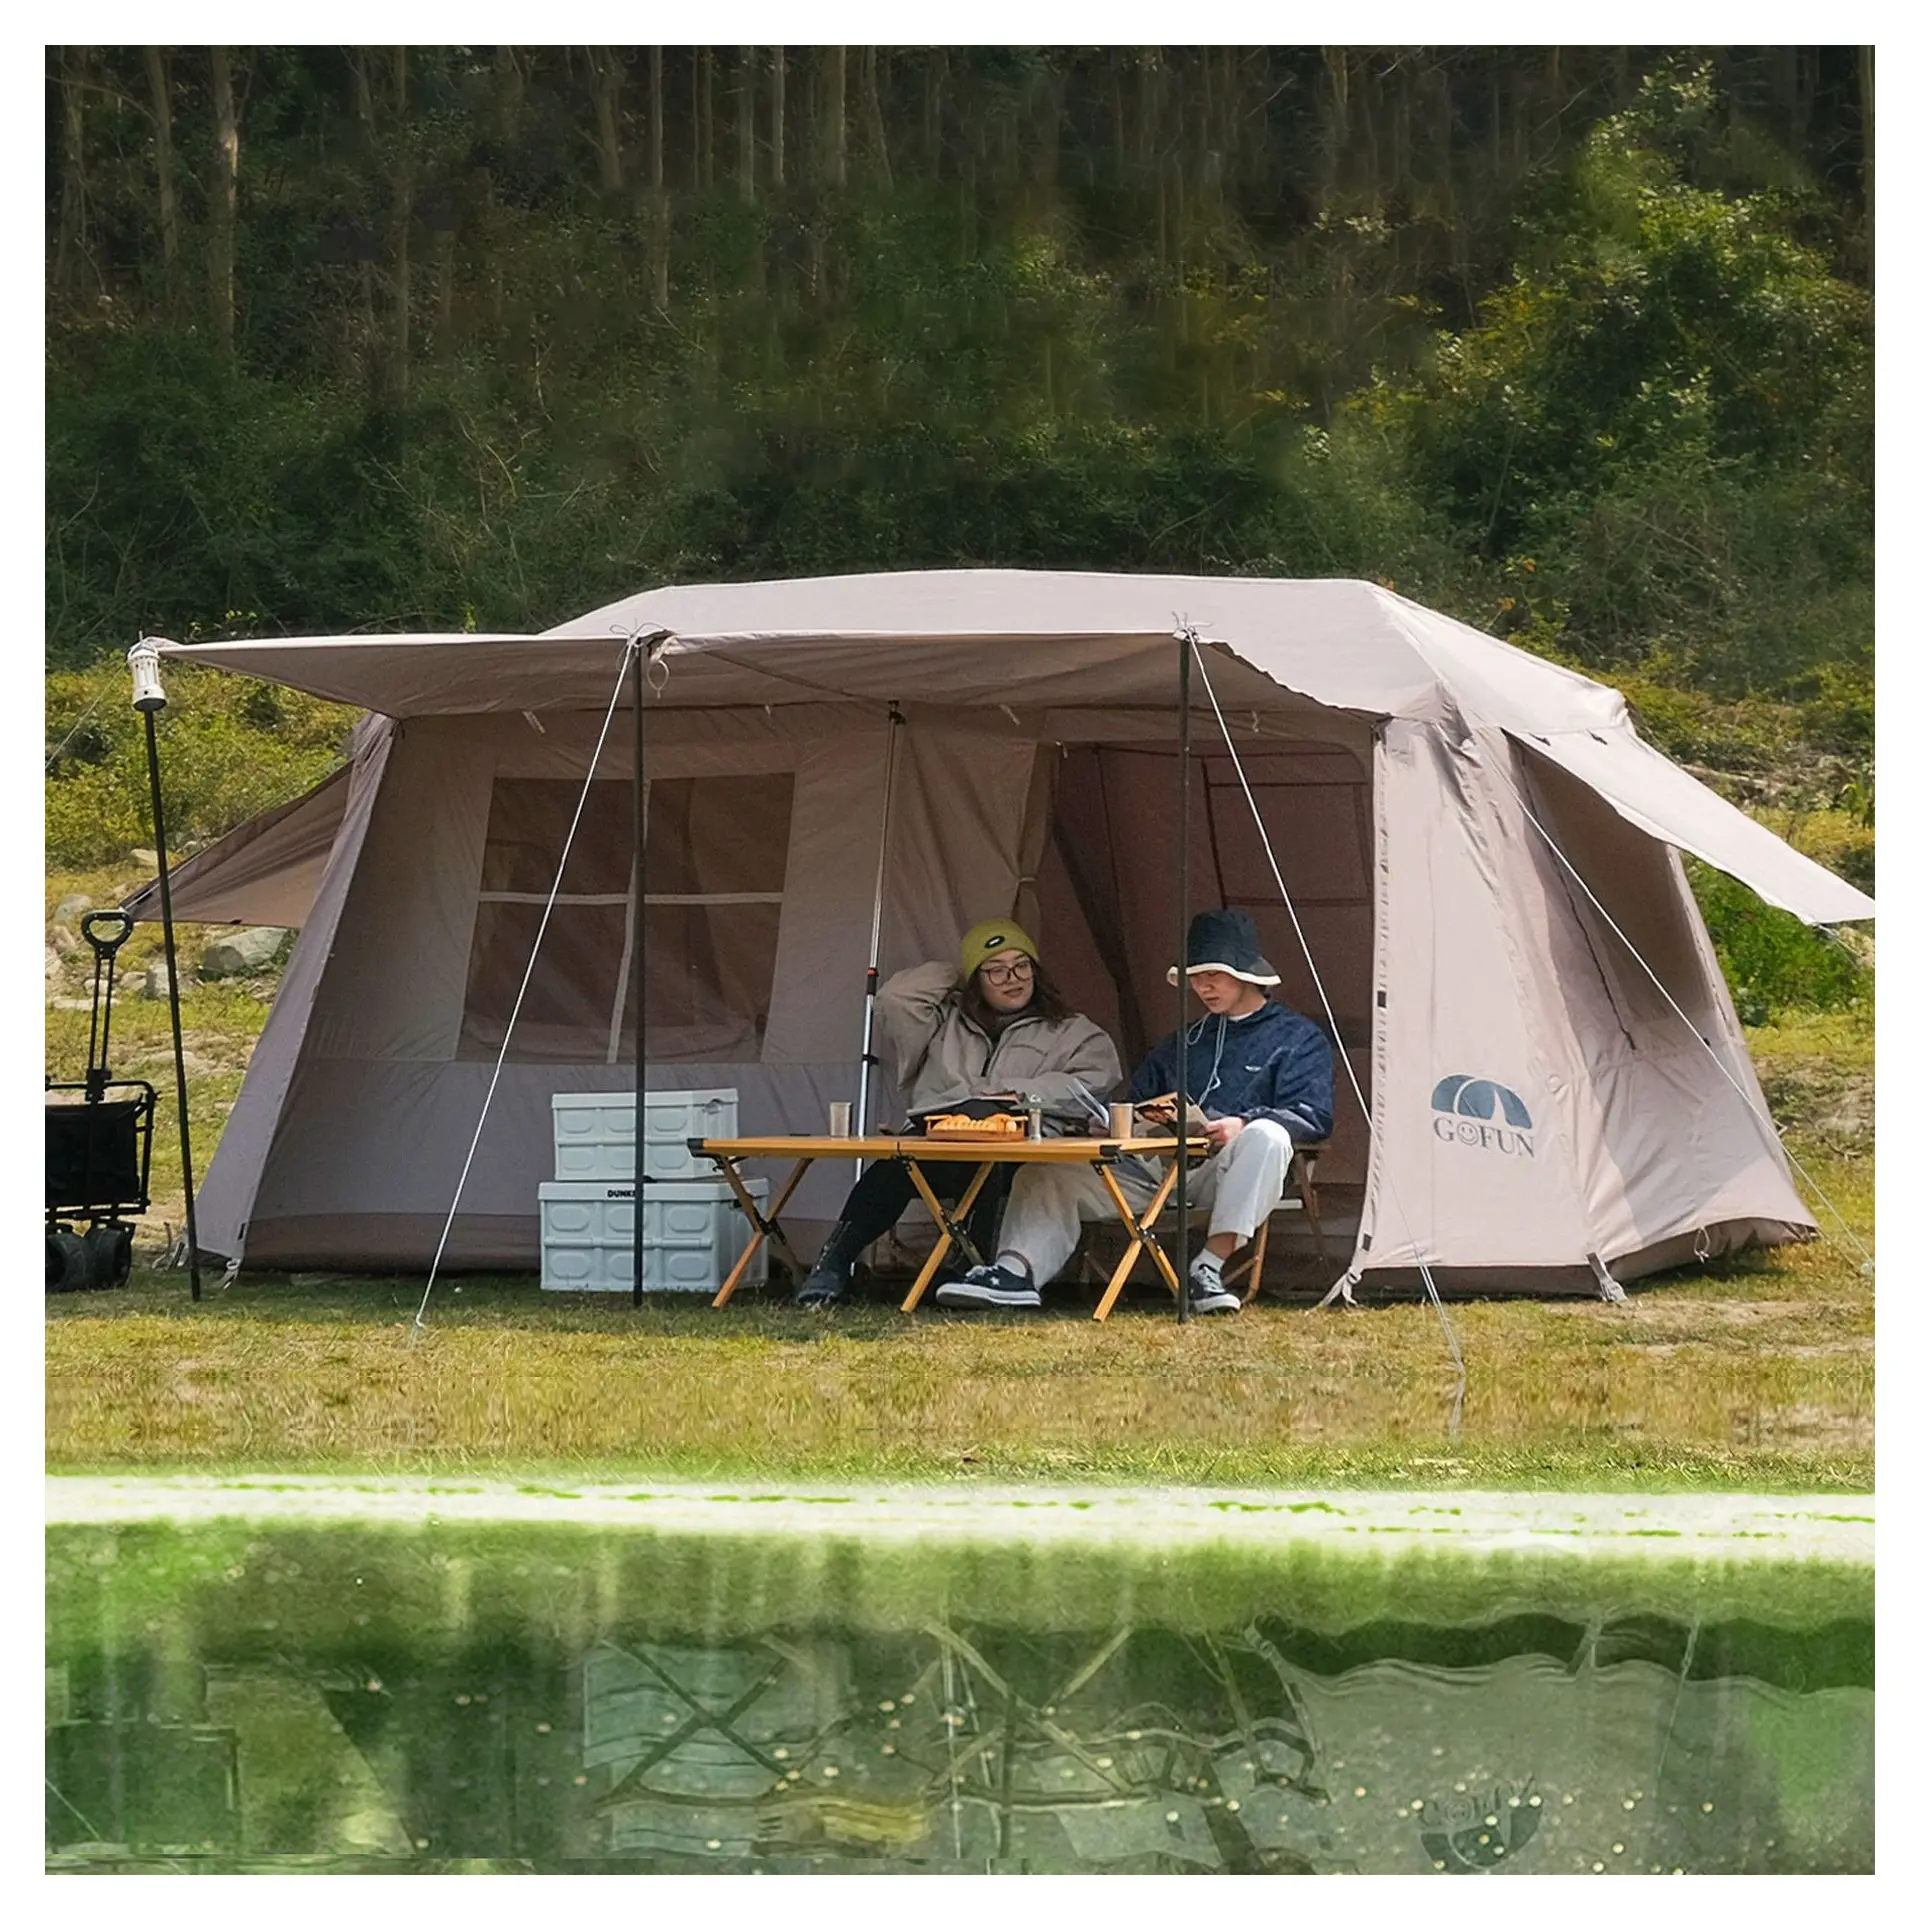 Gofun גג דייסה 13 אוהל טיול, חם אוהלים מוצר חם מחנאות חובה כבדה, אוהלים צד בהתאמה אישית לאירועים בחוץ/